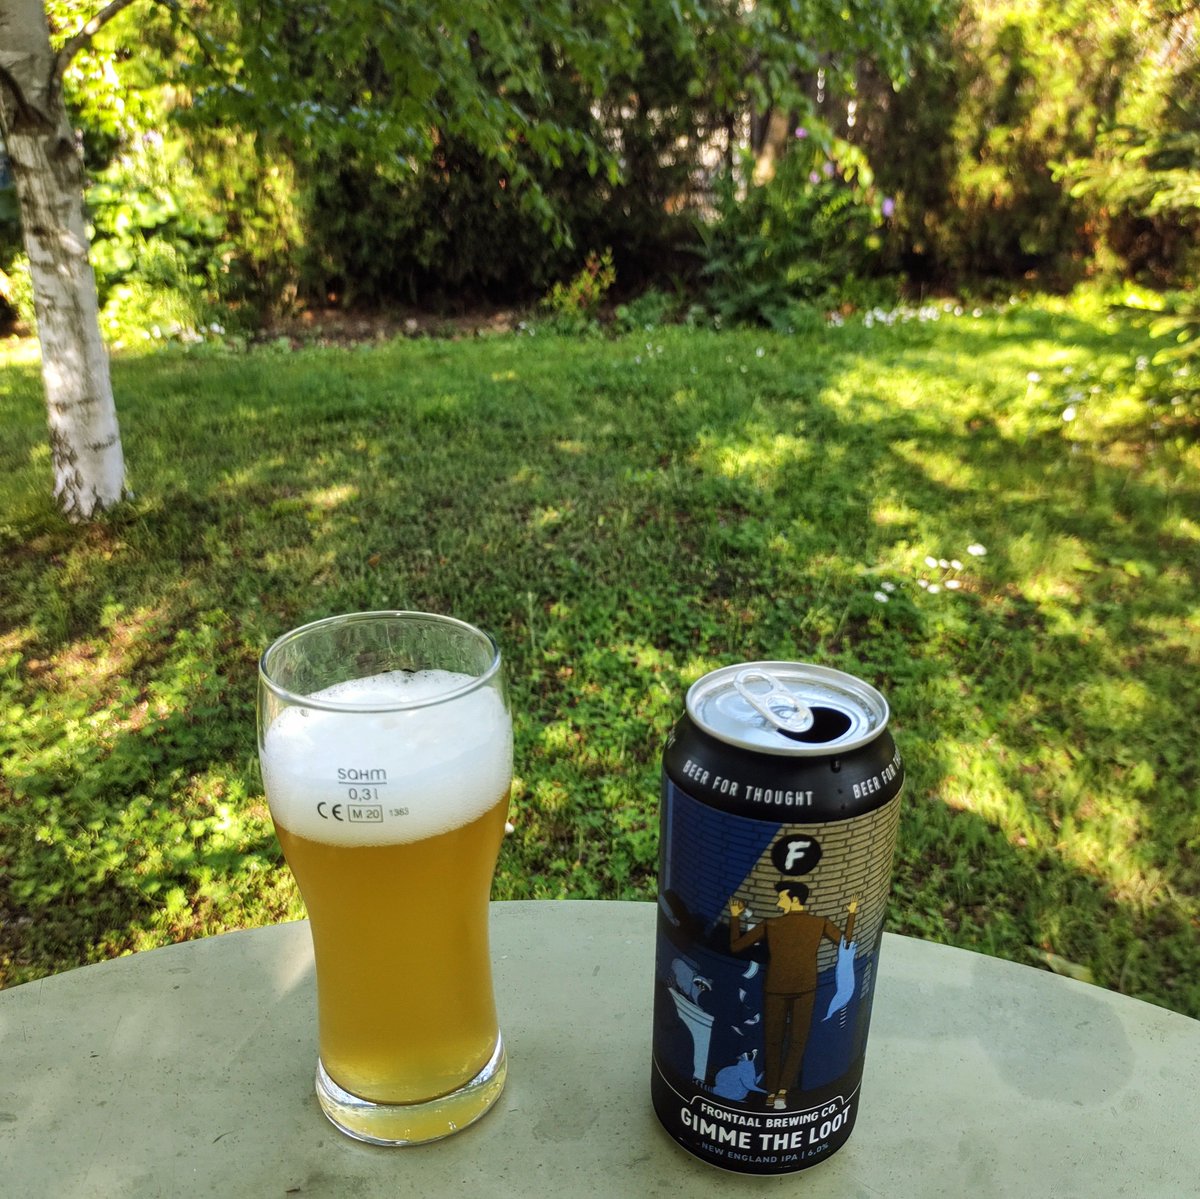 Тази година енота още не е изкаран, а и мен ме домързя да го извадя за това просто малко зеленина. #frontaalbrewingco #gimmetheloot #neipa #beer #cheers #наздраве